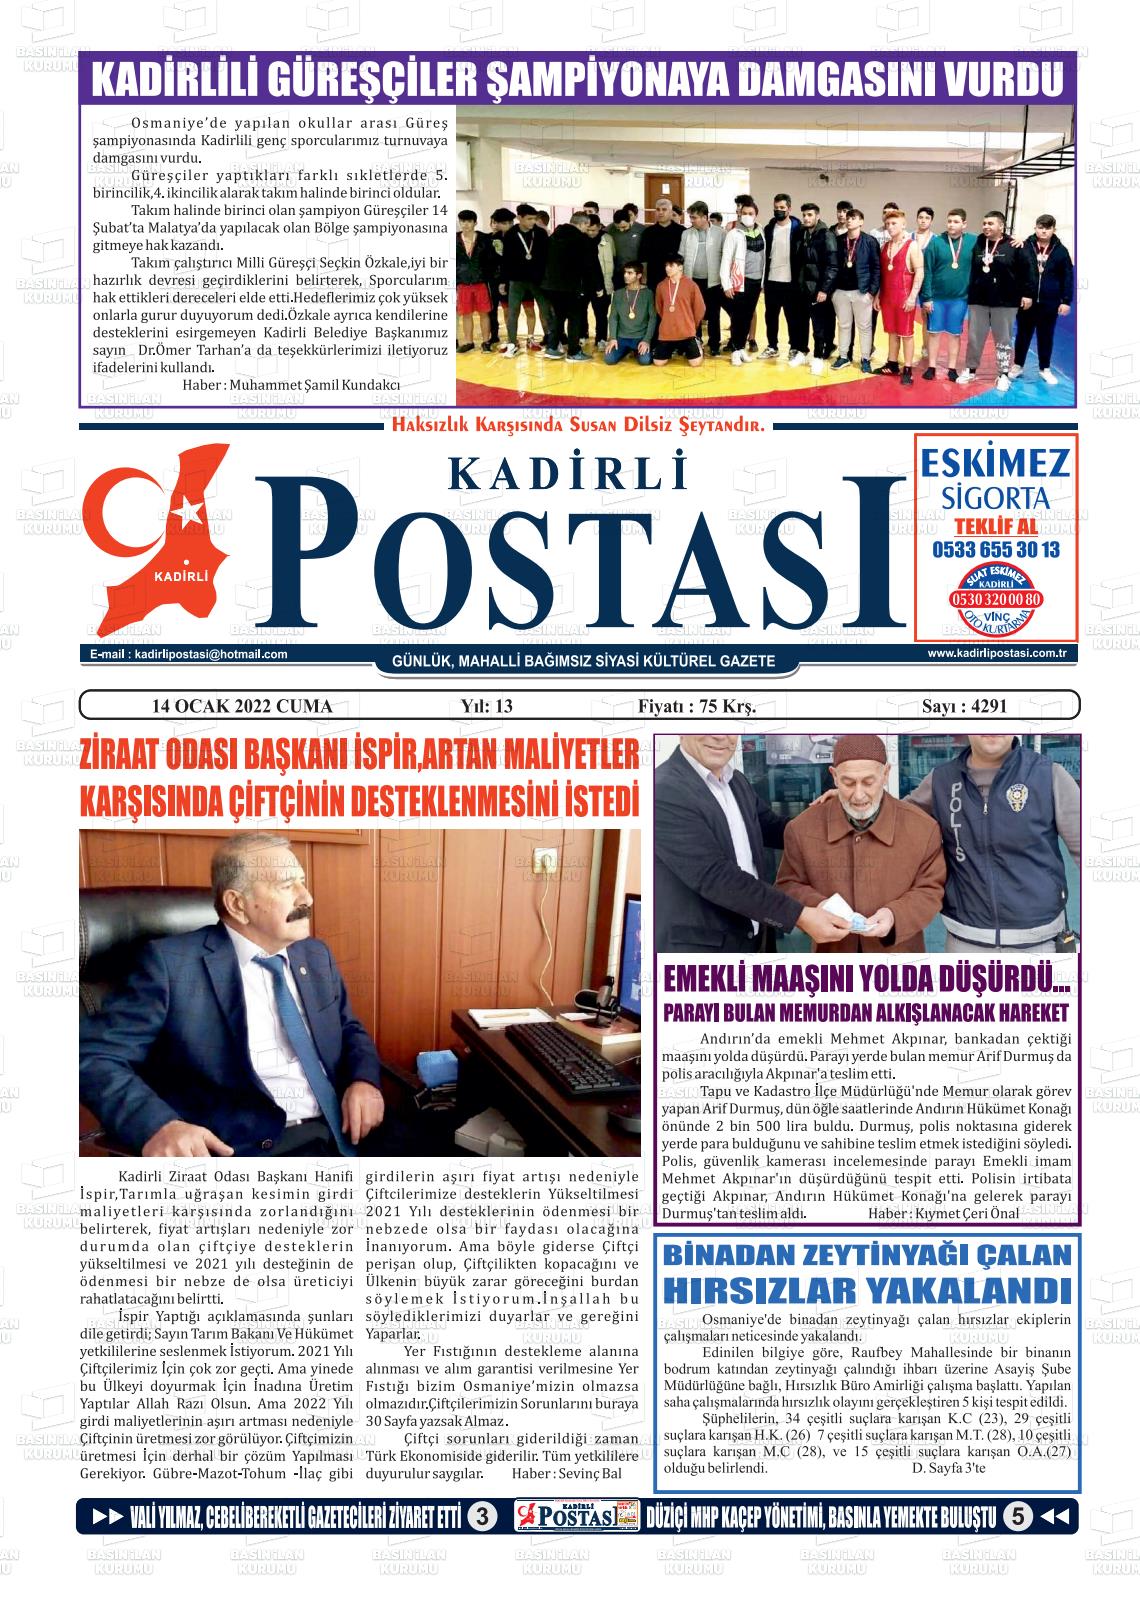 14 Ocak 2022 Kadirli Postası Gazete Manşeti